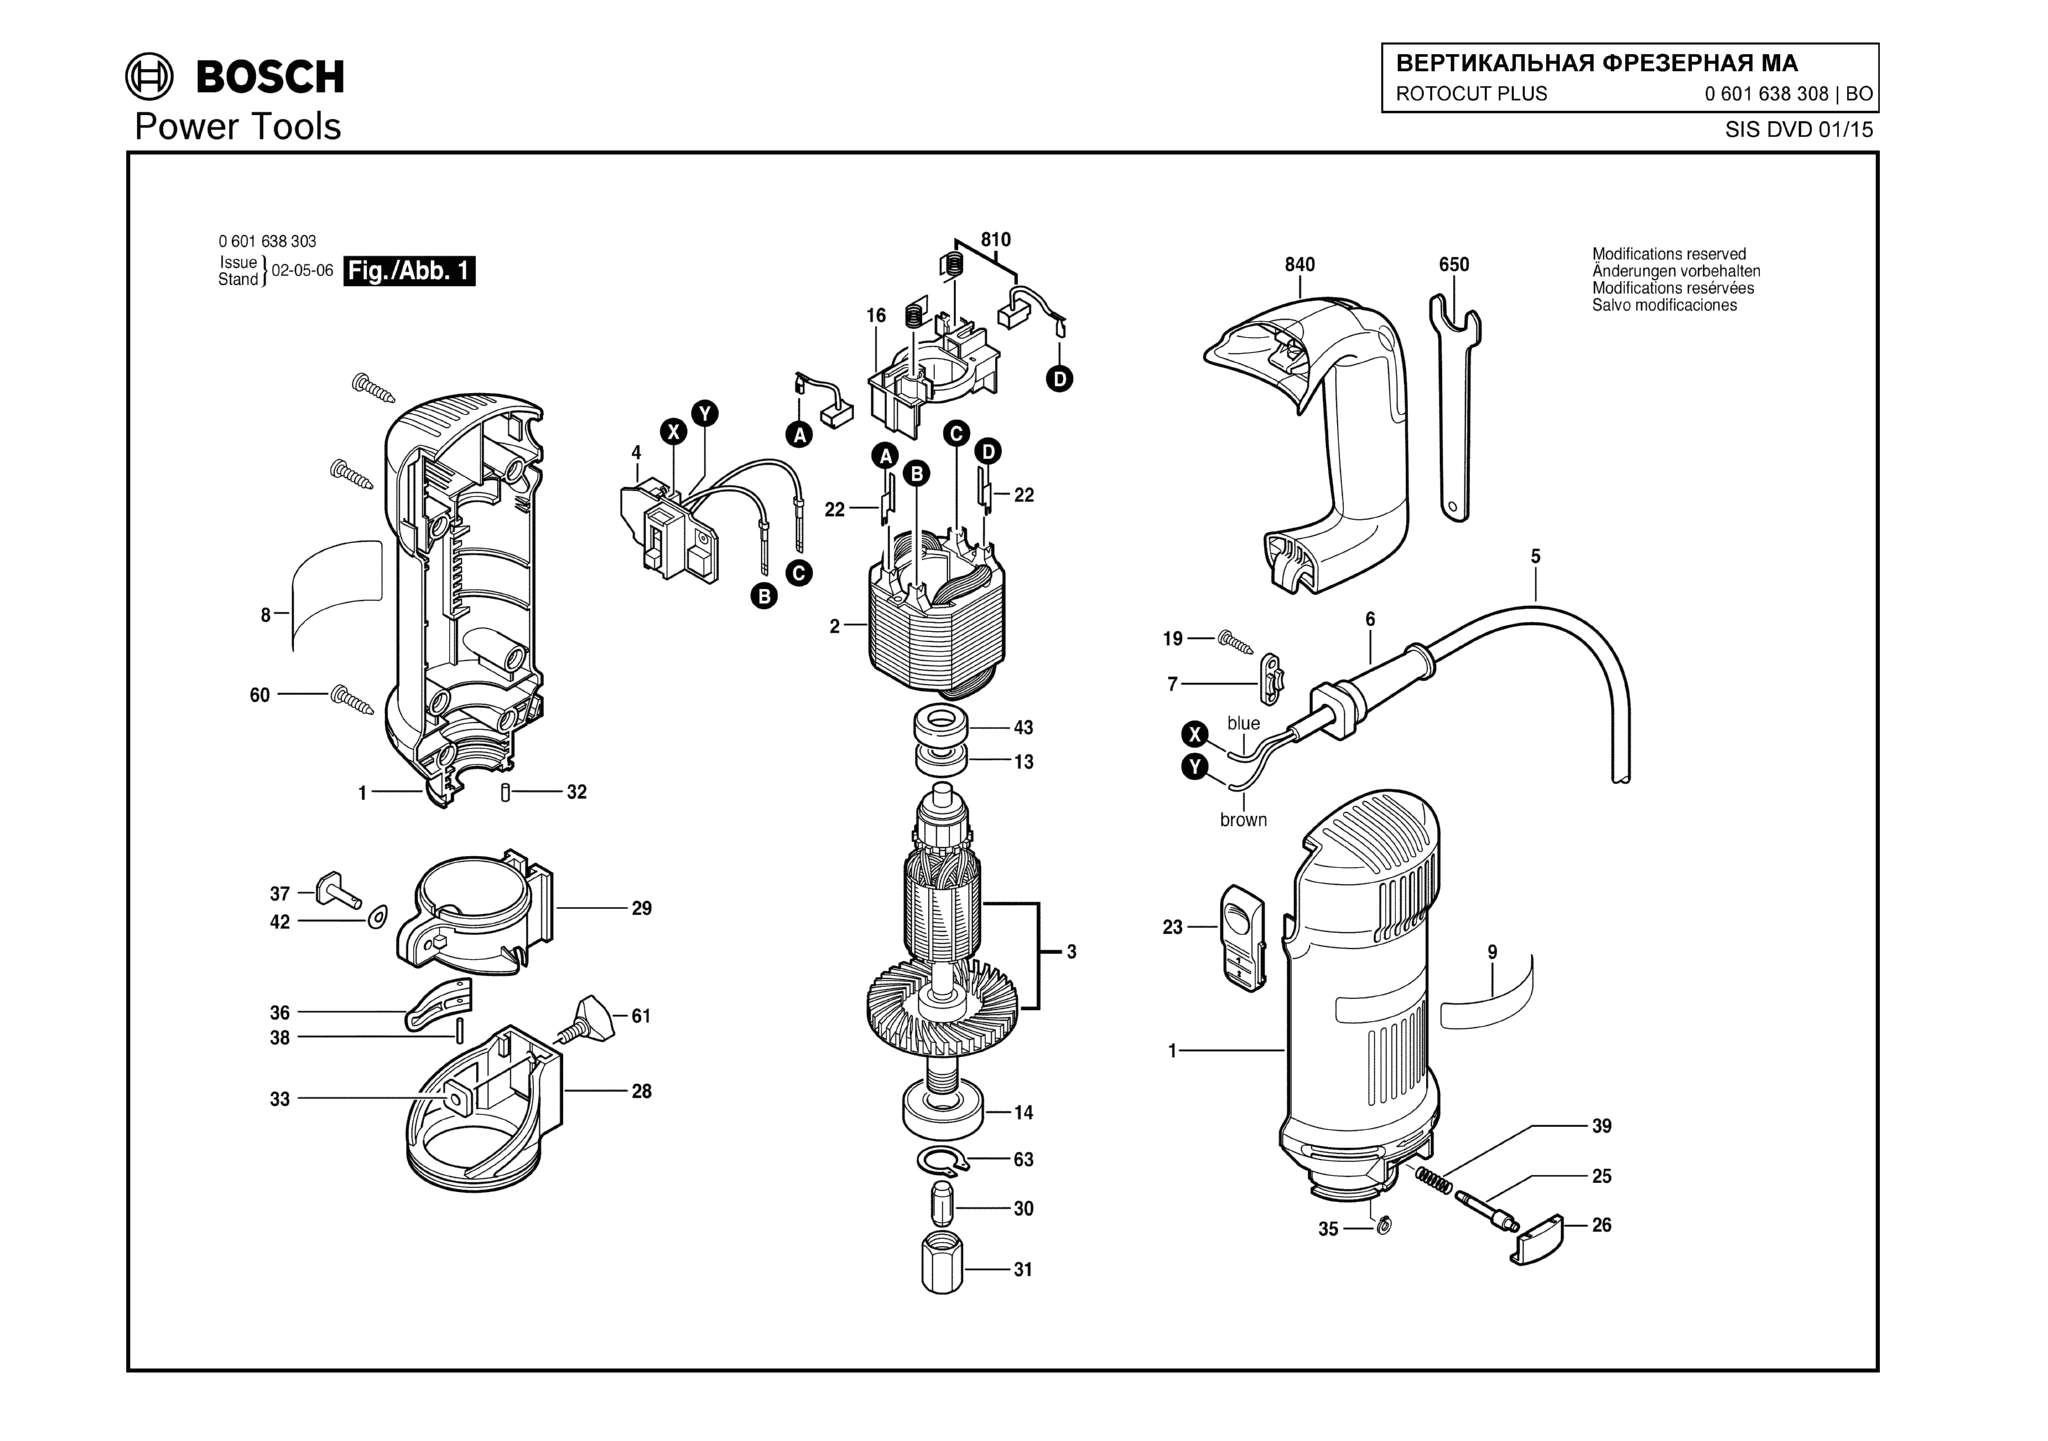 Запчасти, схема и деталировка Bosch ROTOCUT PLUS (ТИП 0601638308)